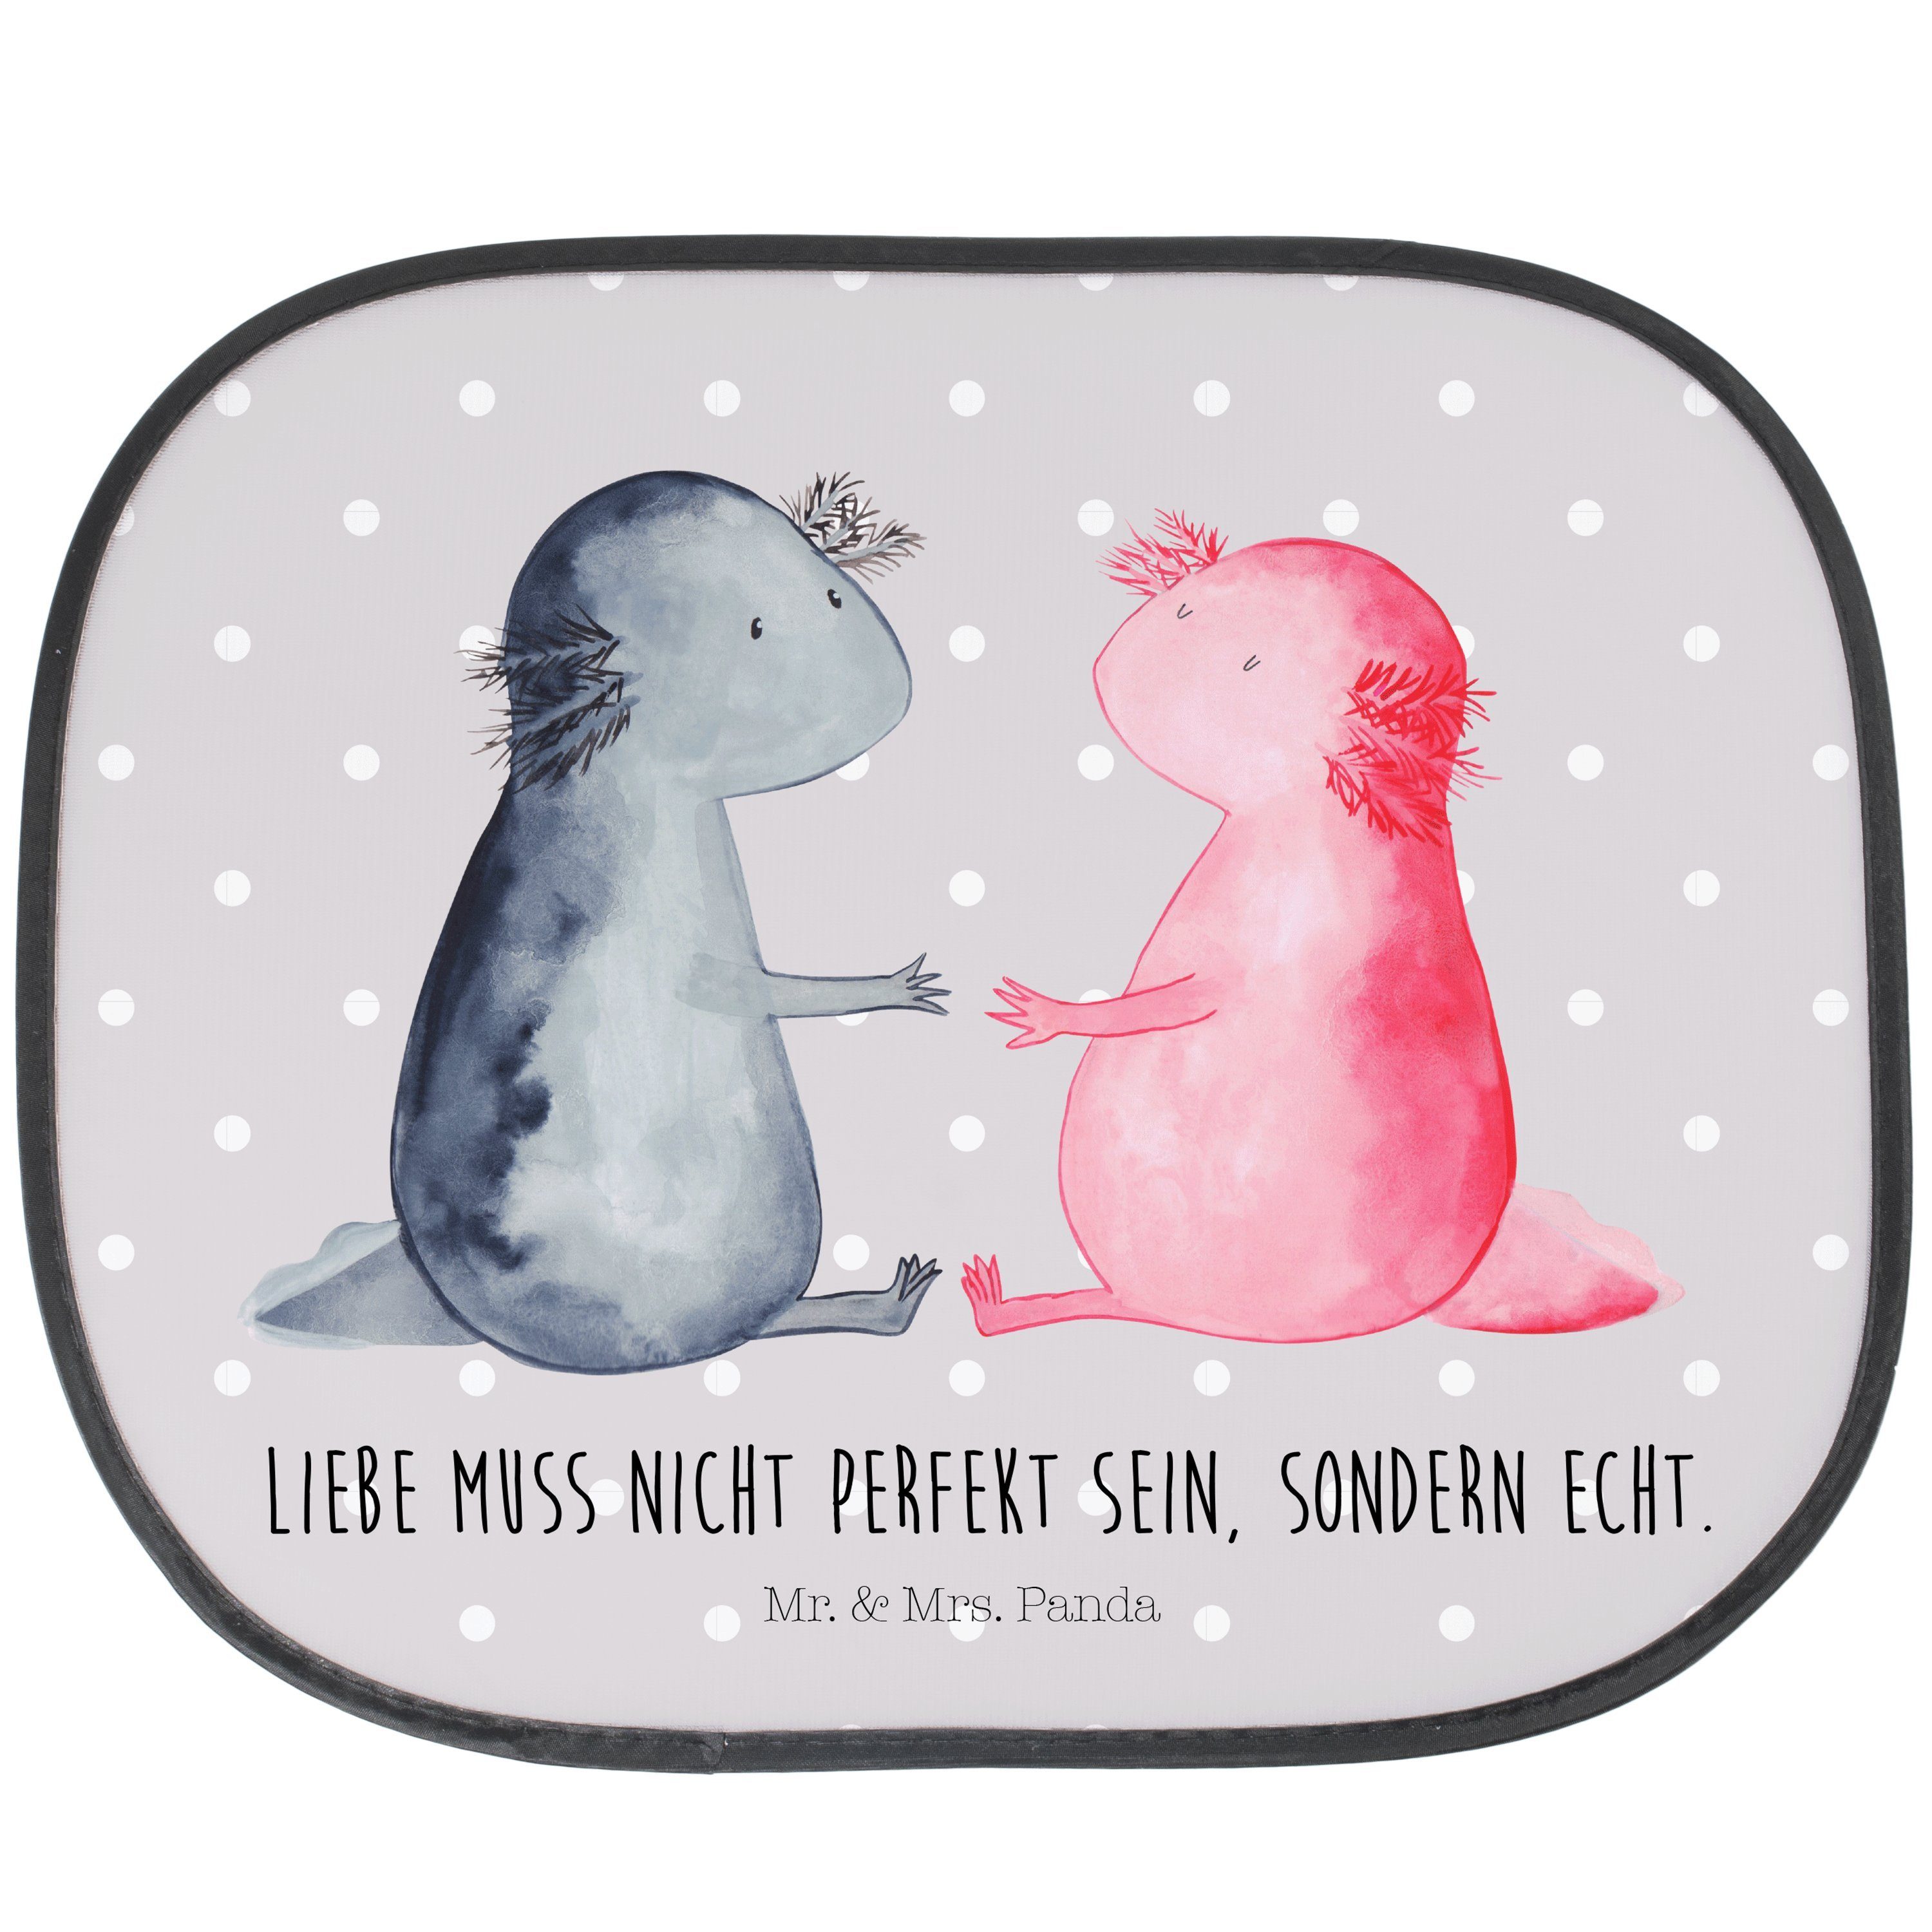 Sonnenschutz Axolotl Liebe - Grau Pastell - Geschenk, große Liebe, Sonnenschutzfol, Mr. & Mrs. Panda, Seidenmatt